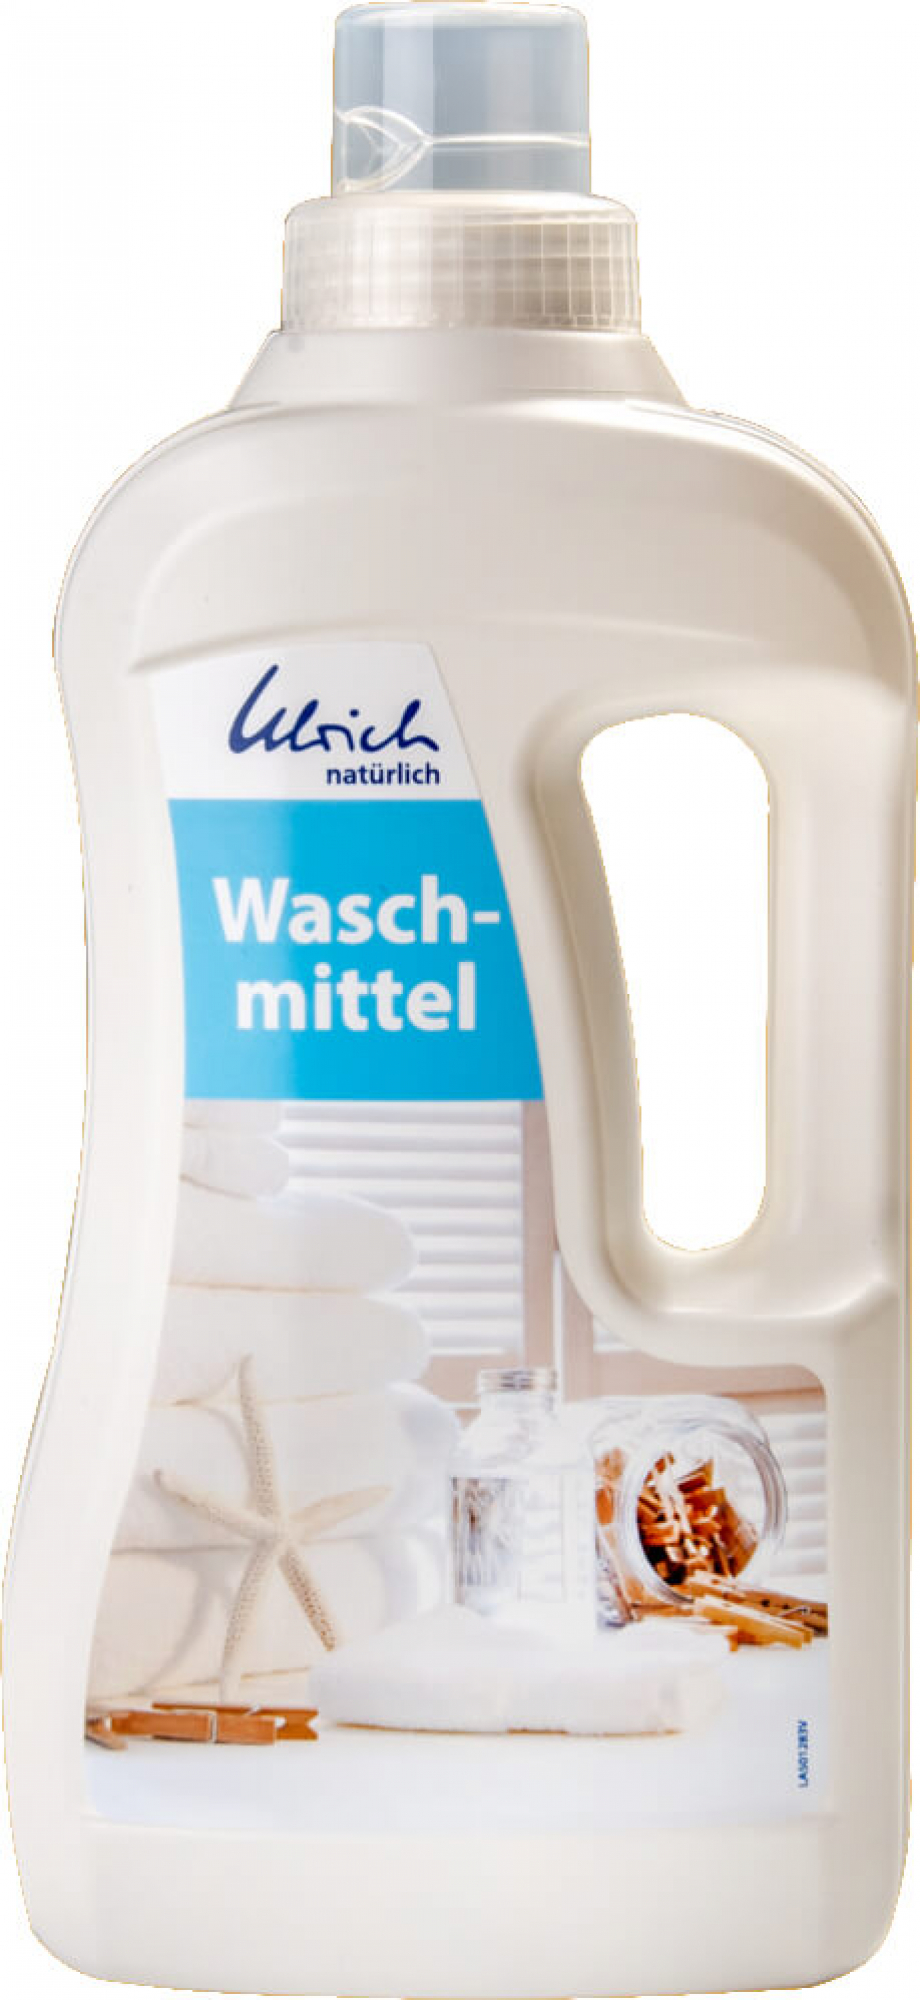 Ulrich natürlich Waschmittel